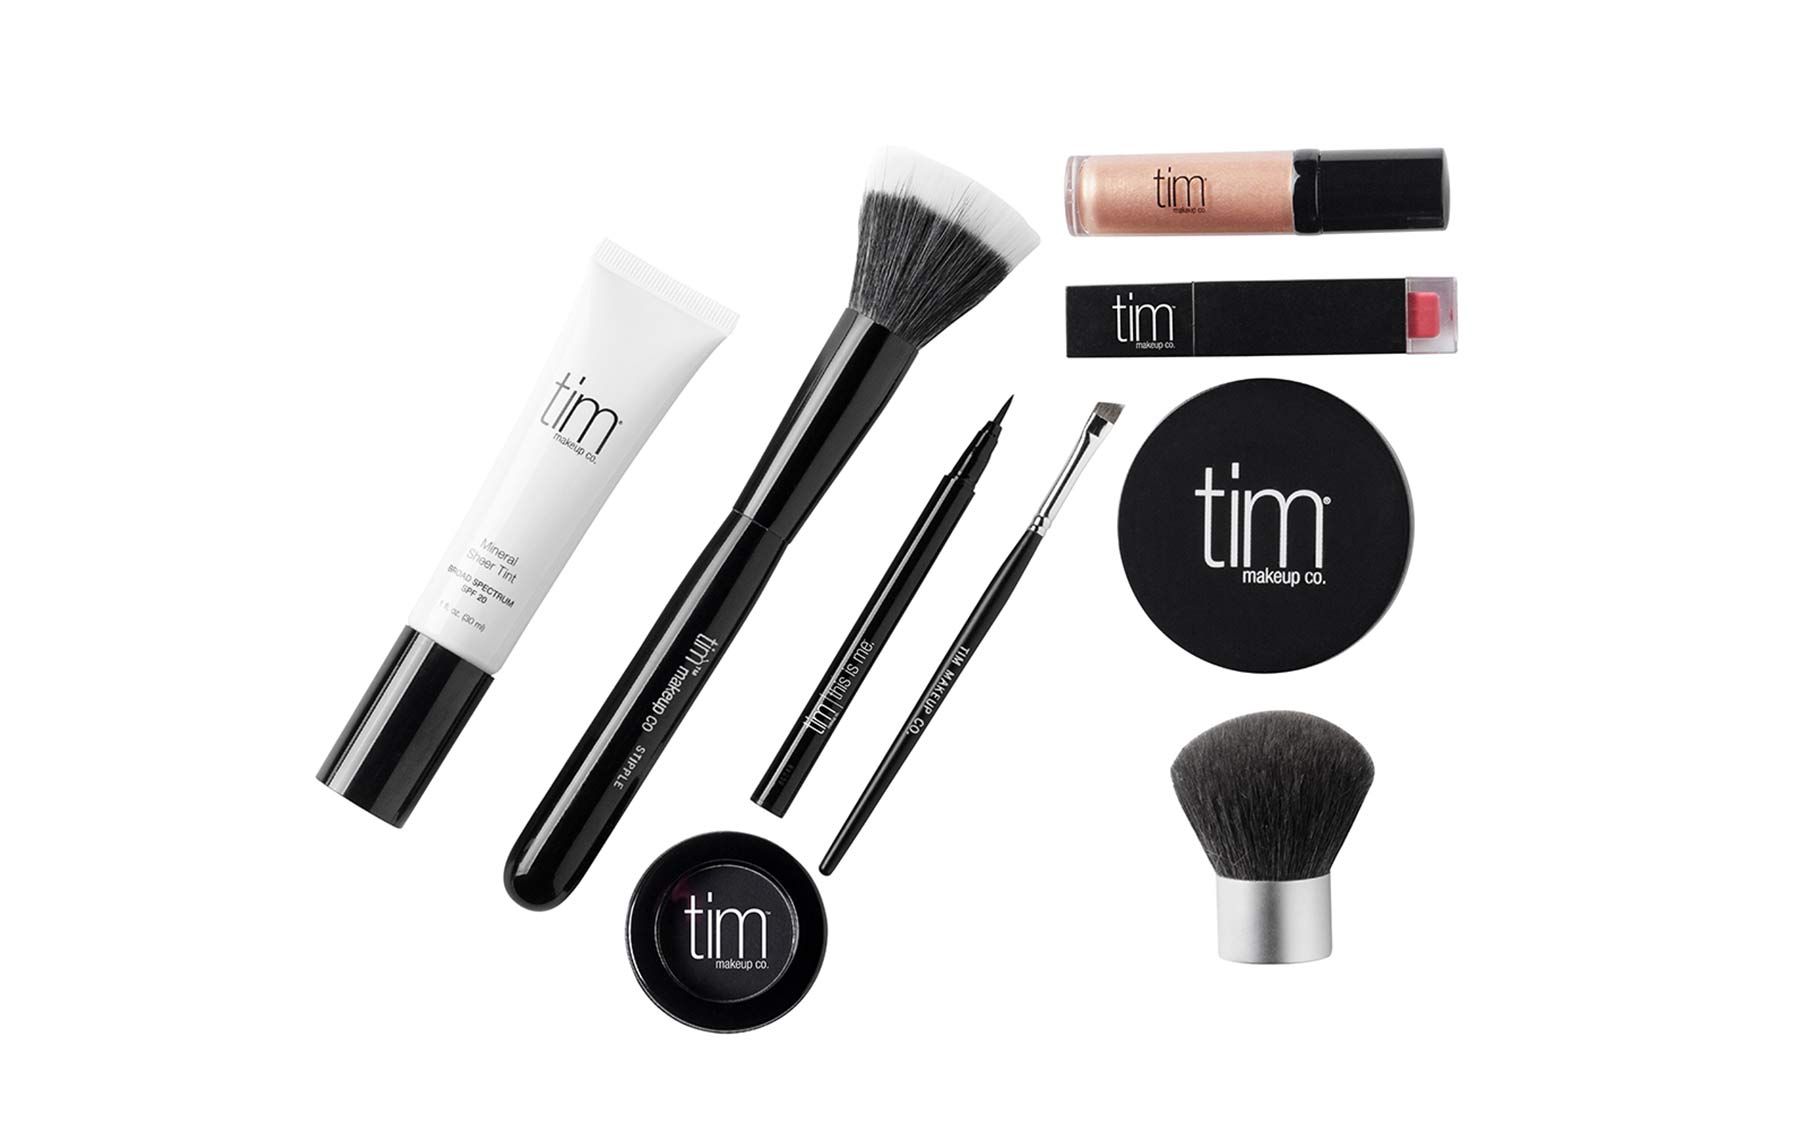 The TIM Makeup Kit